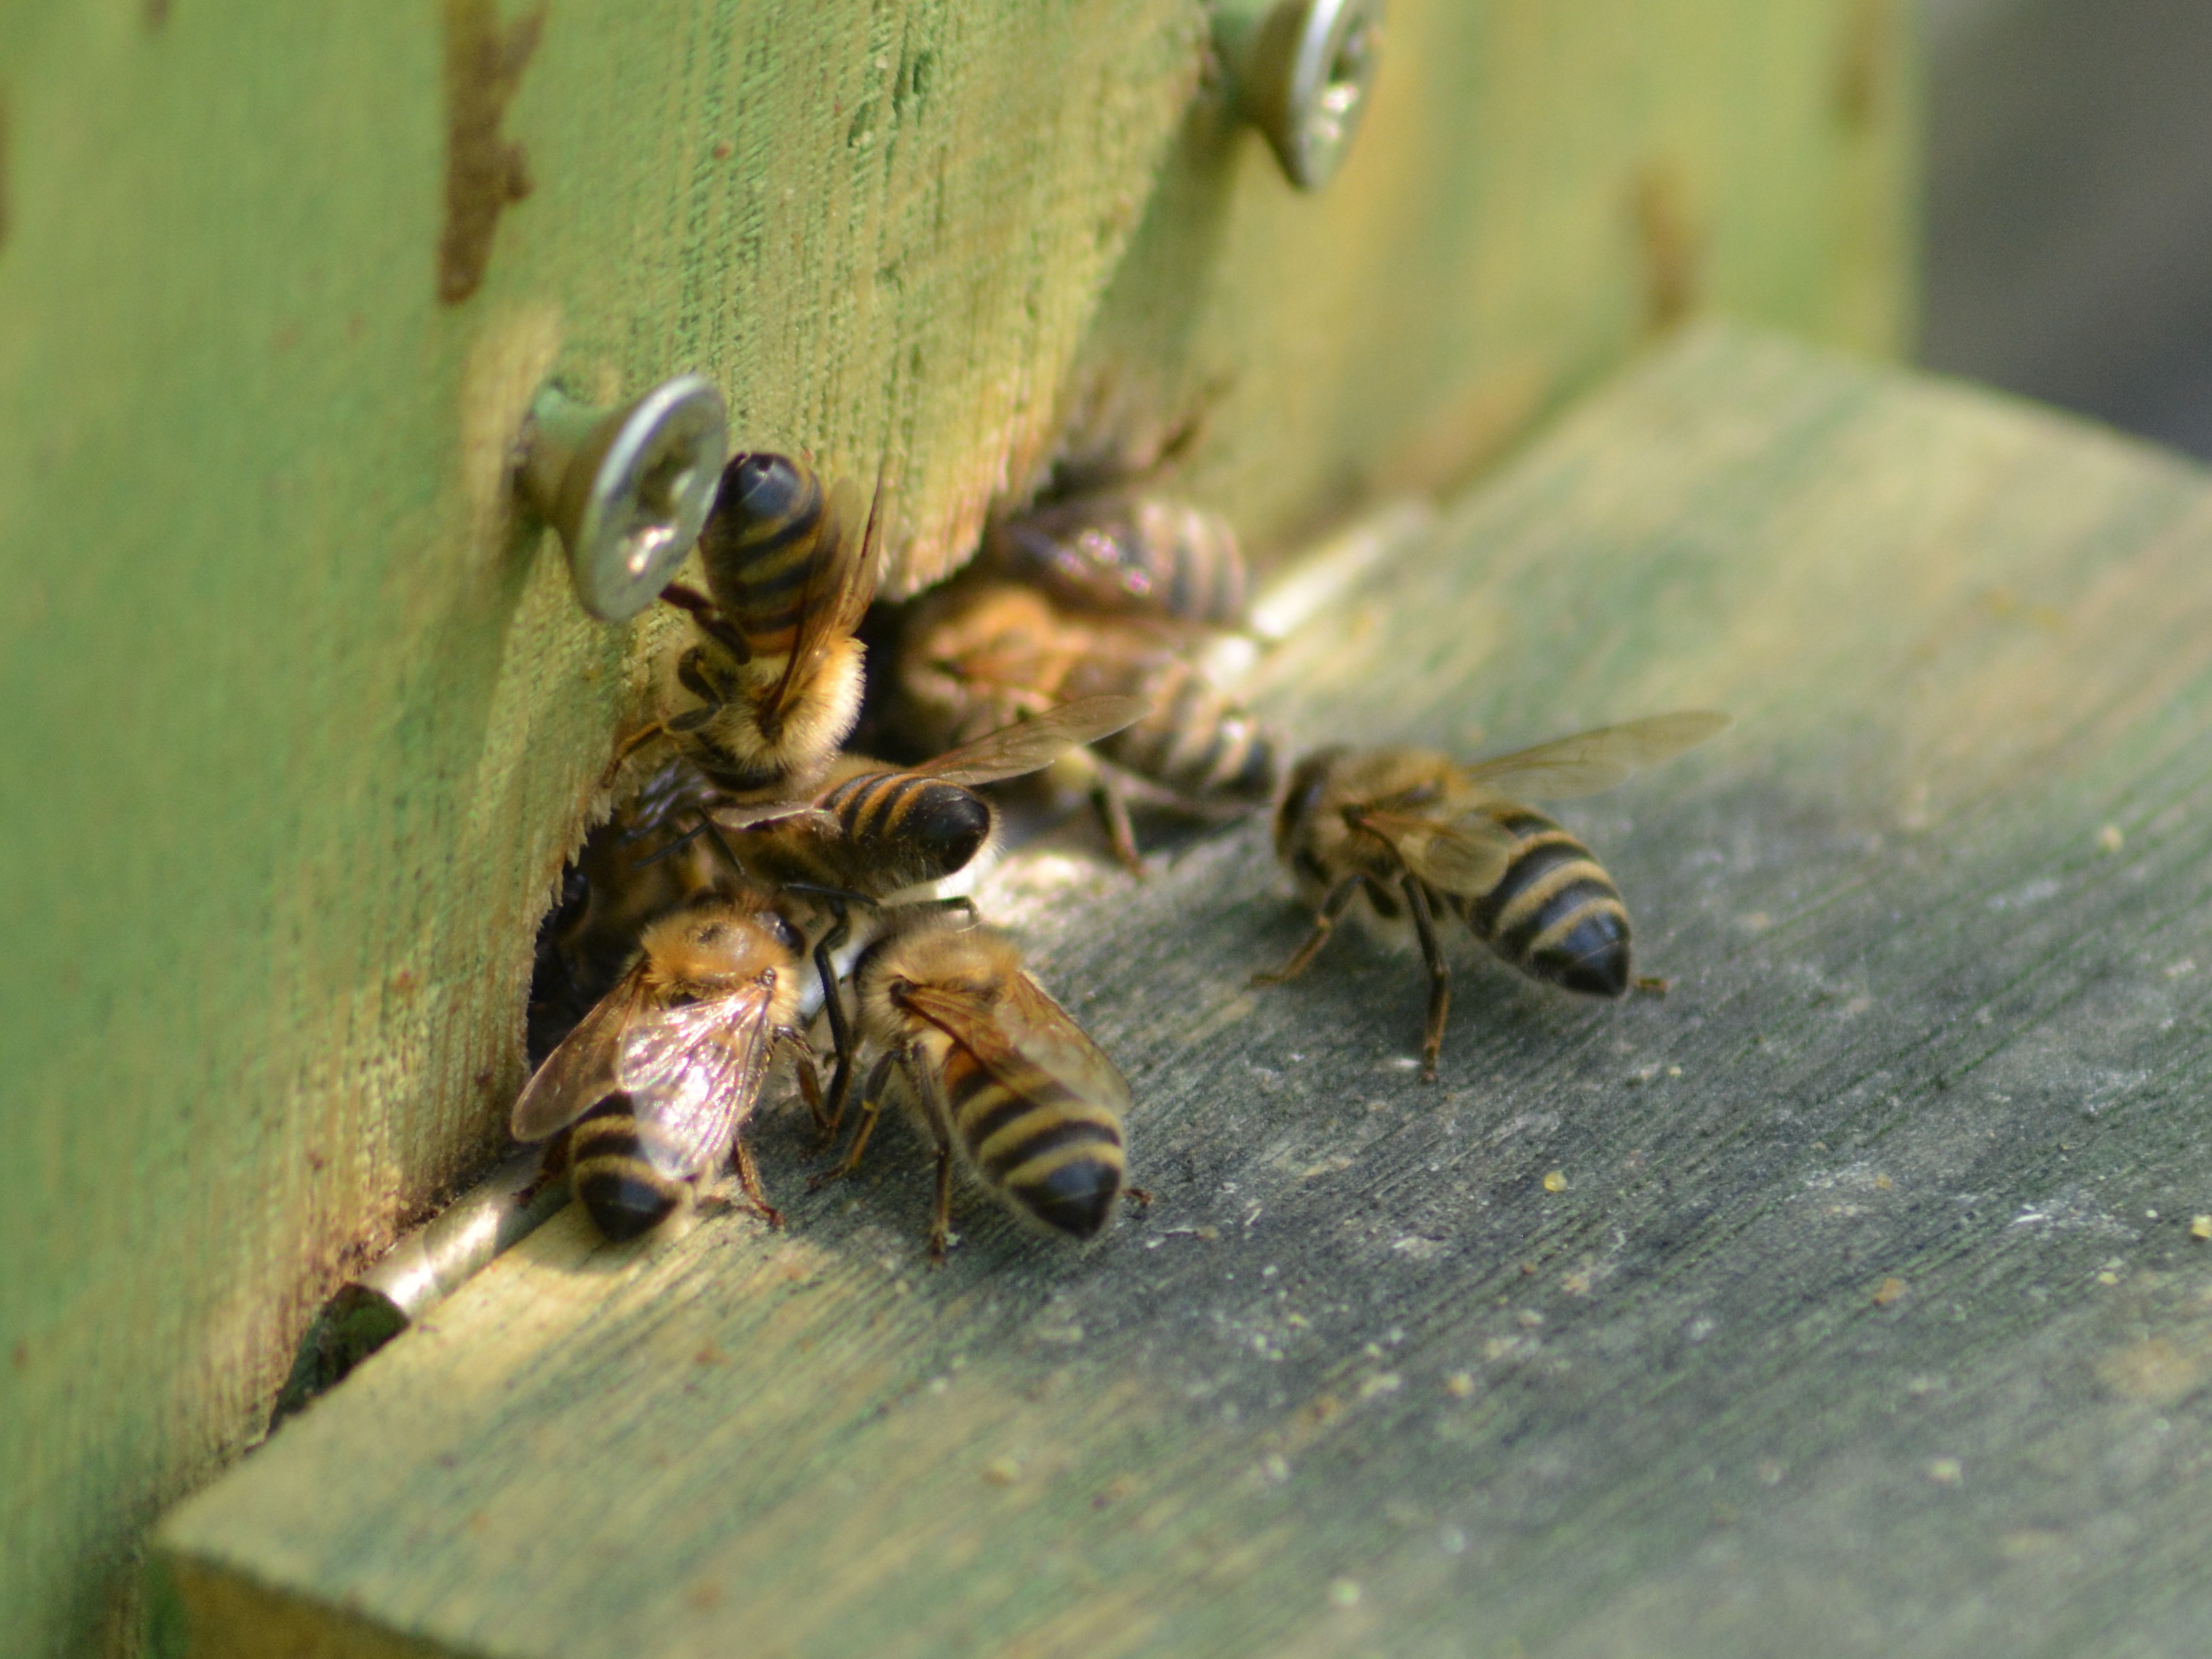 Honigbienen (Apis mellifera) vor dem Eingang eines Bienenschaukastens